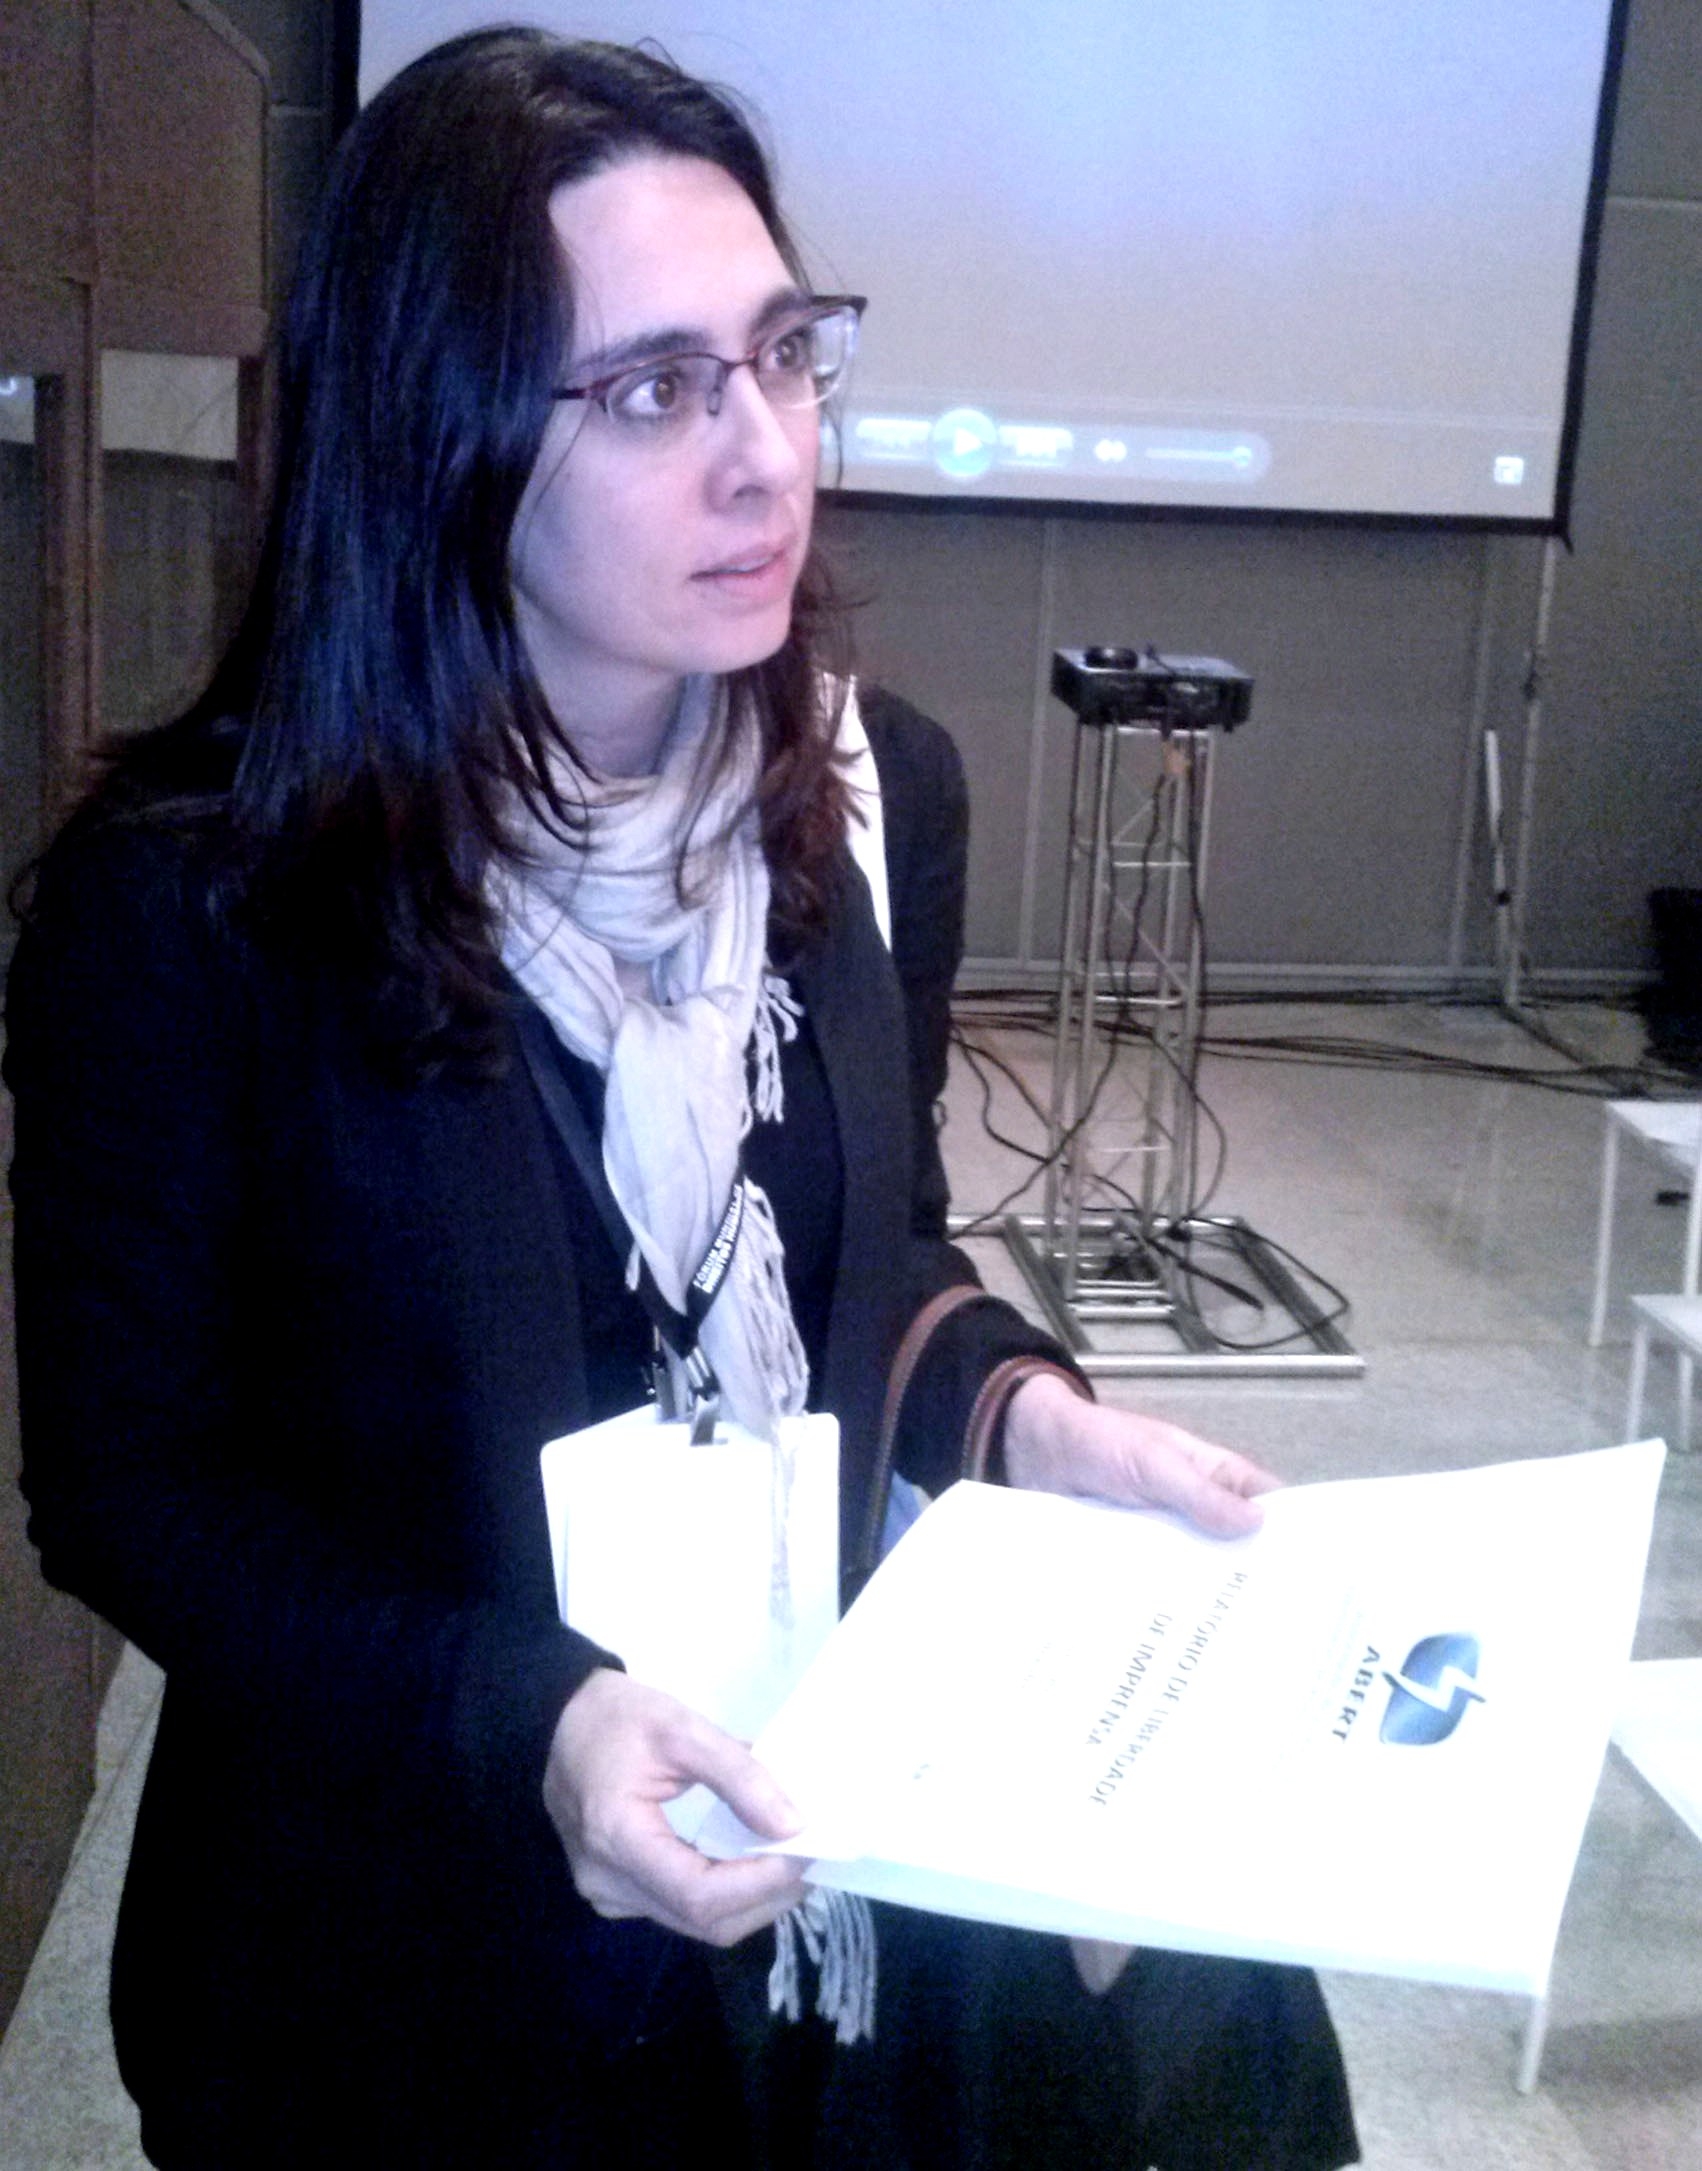 Abert entrega relatório sobre violência contra jornalistas para relatora da OEA